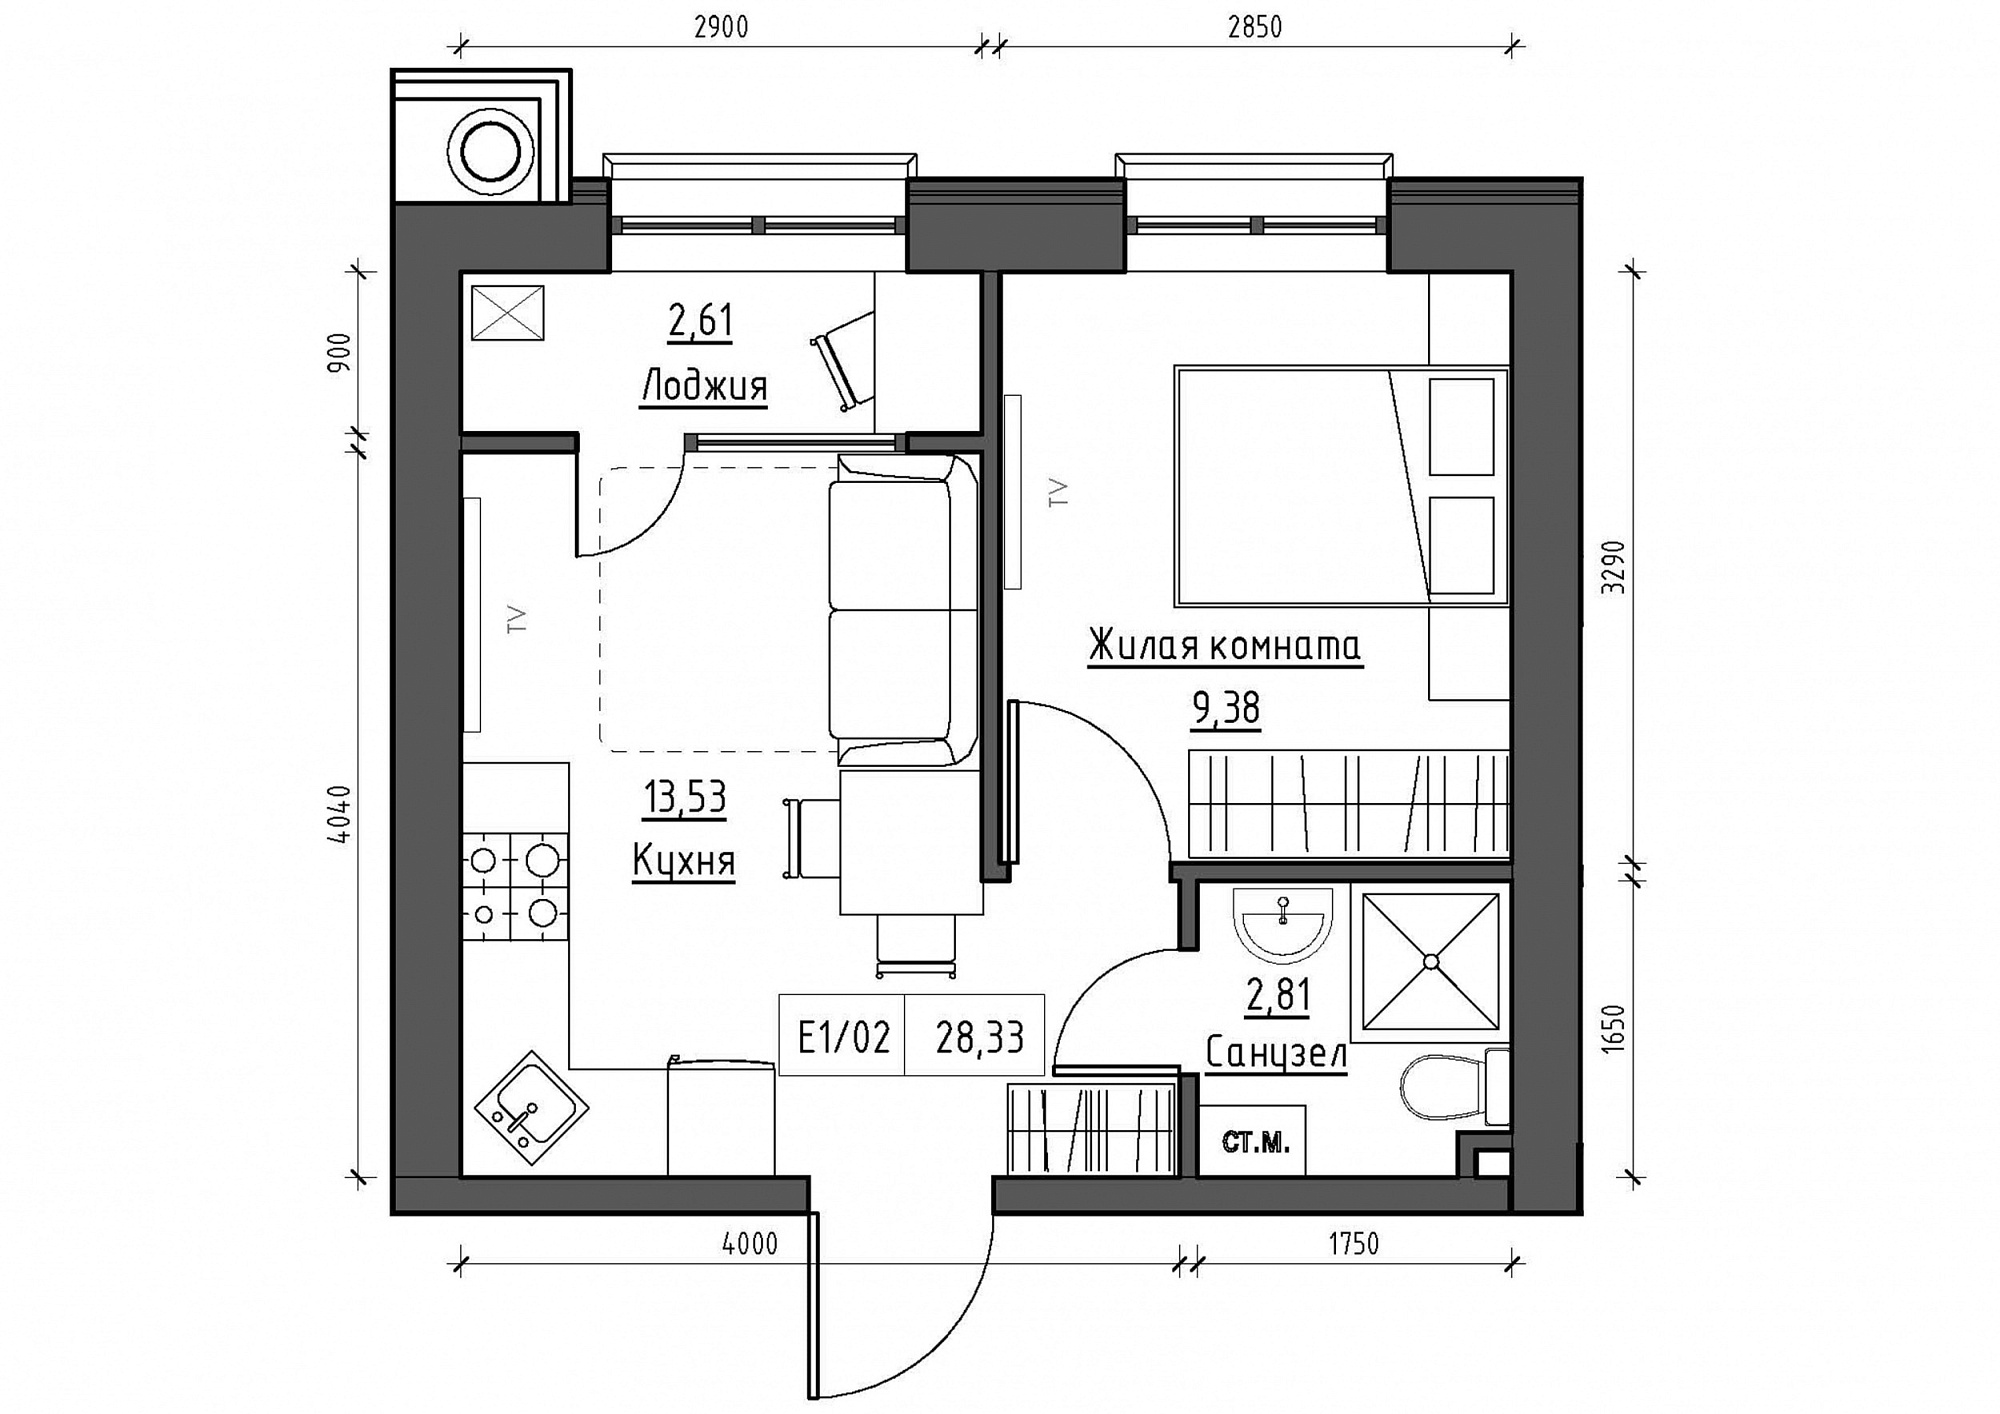 Планировка 1-к квартира площей 28.33м2, KS-011-02/0015.